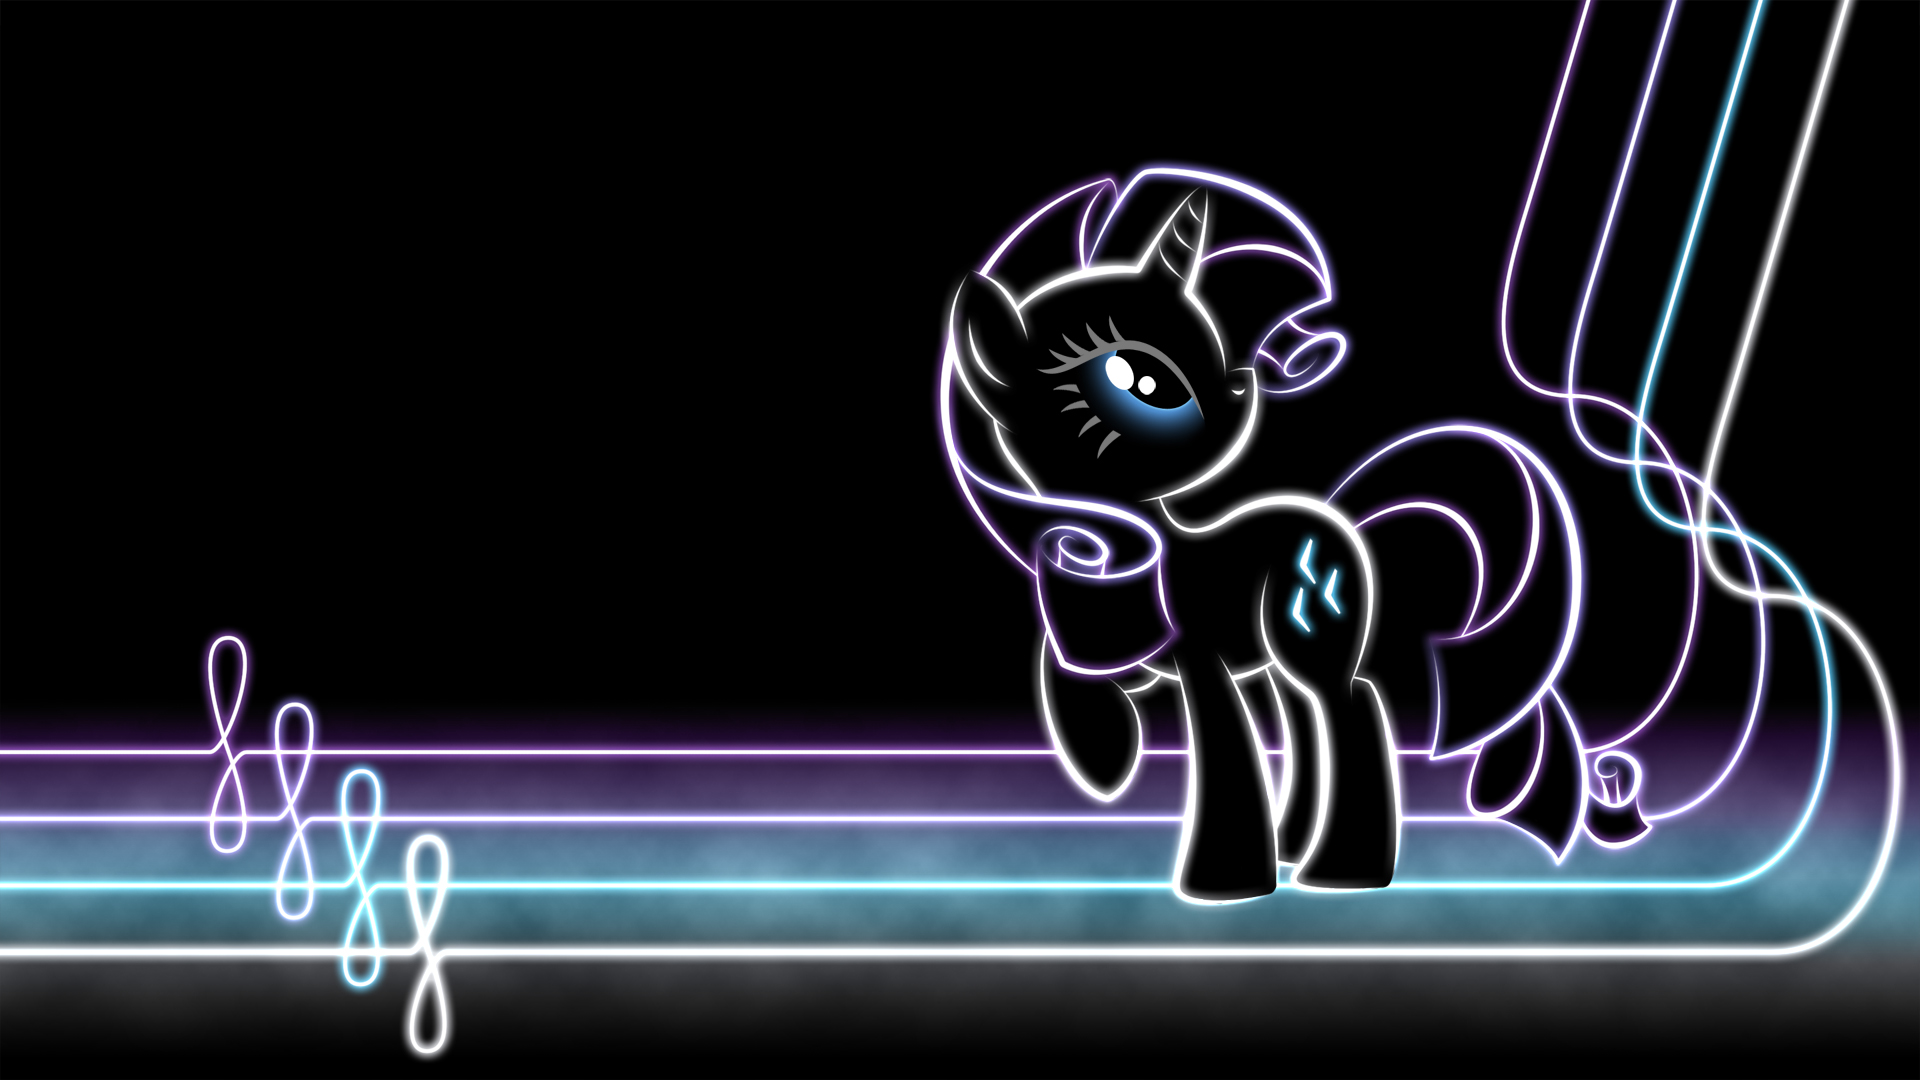 MLP Glow Wallpapers - My Little Pony Friendship is Magic Wallpaper  (24559351) - Fanpop